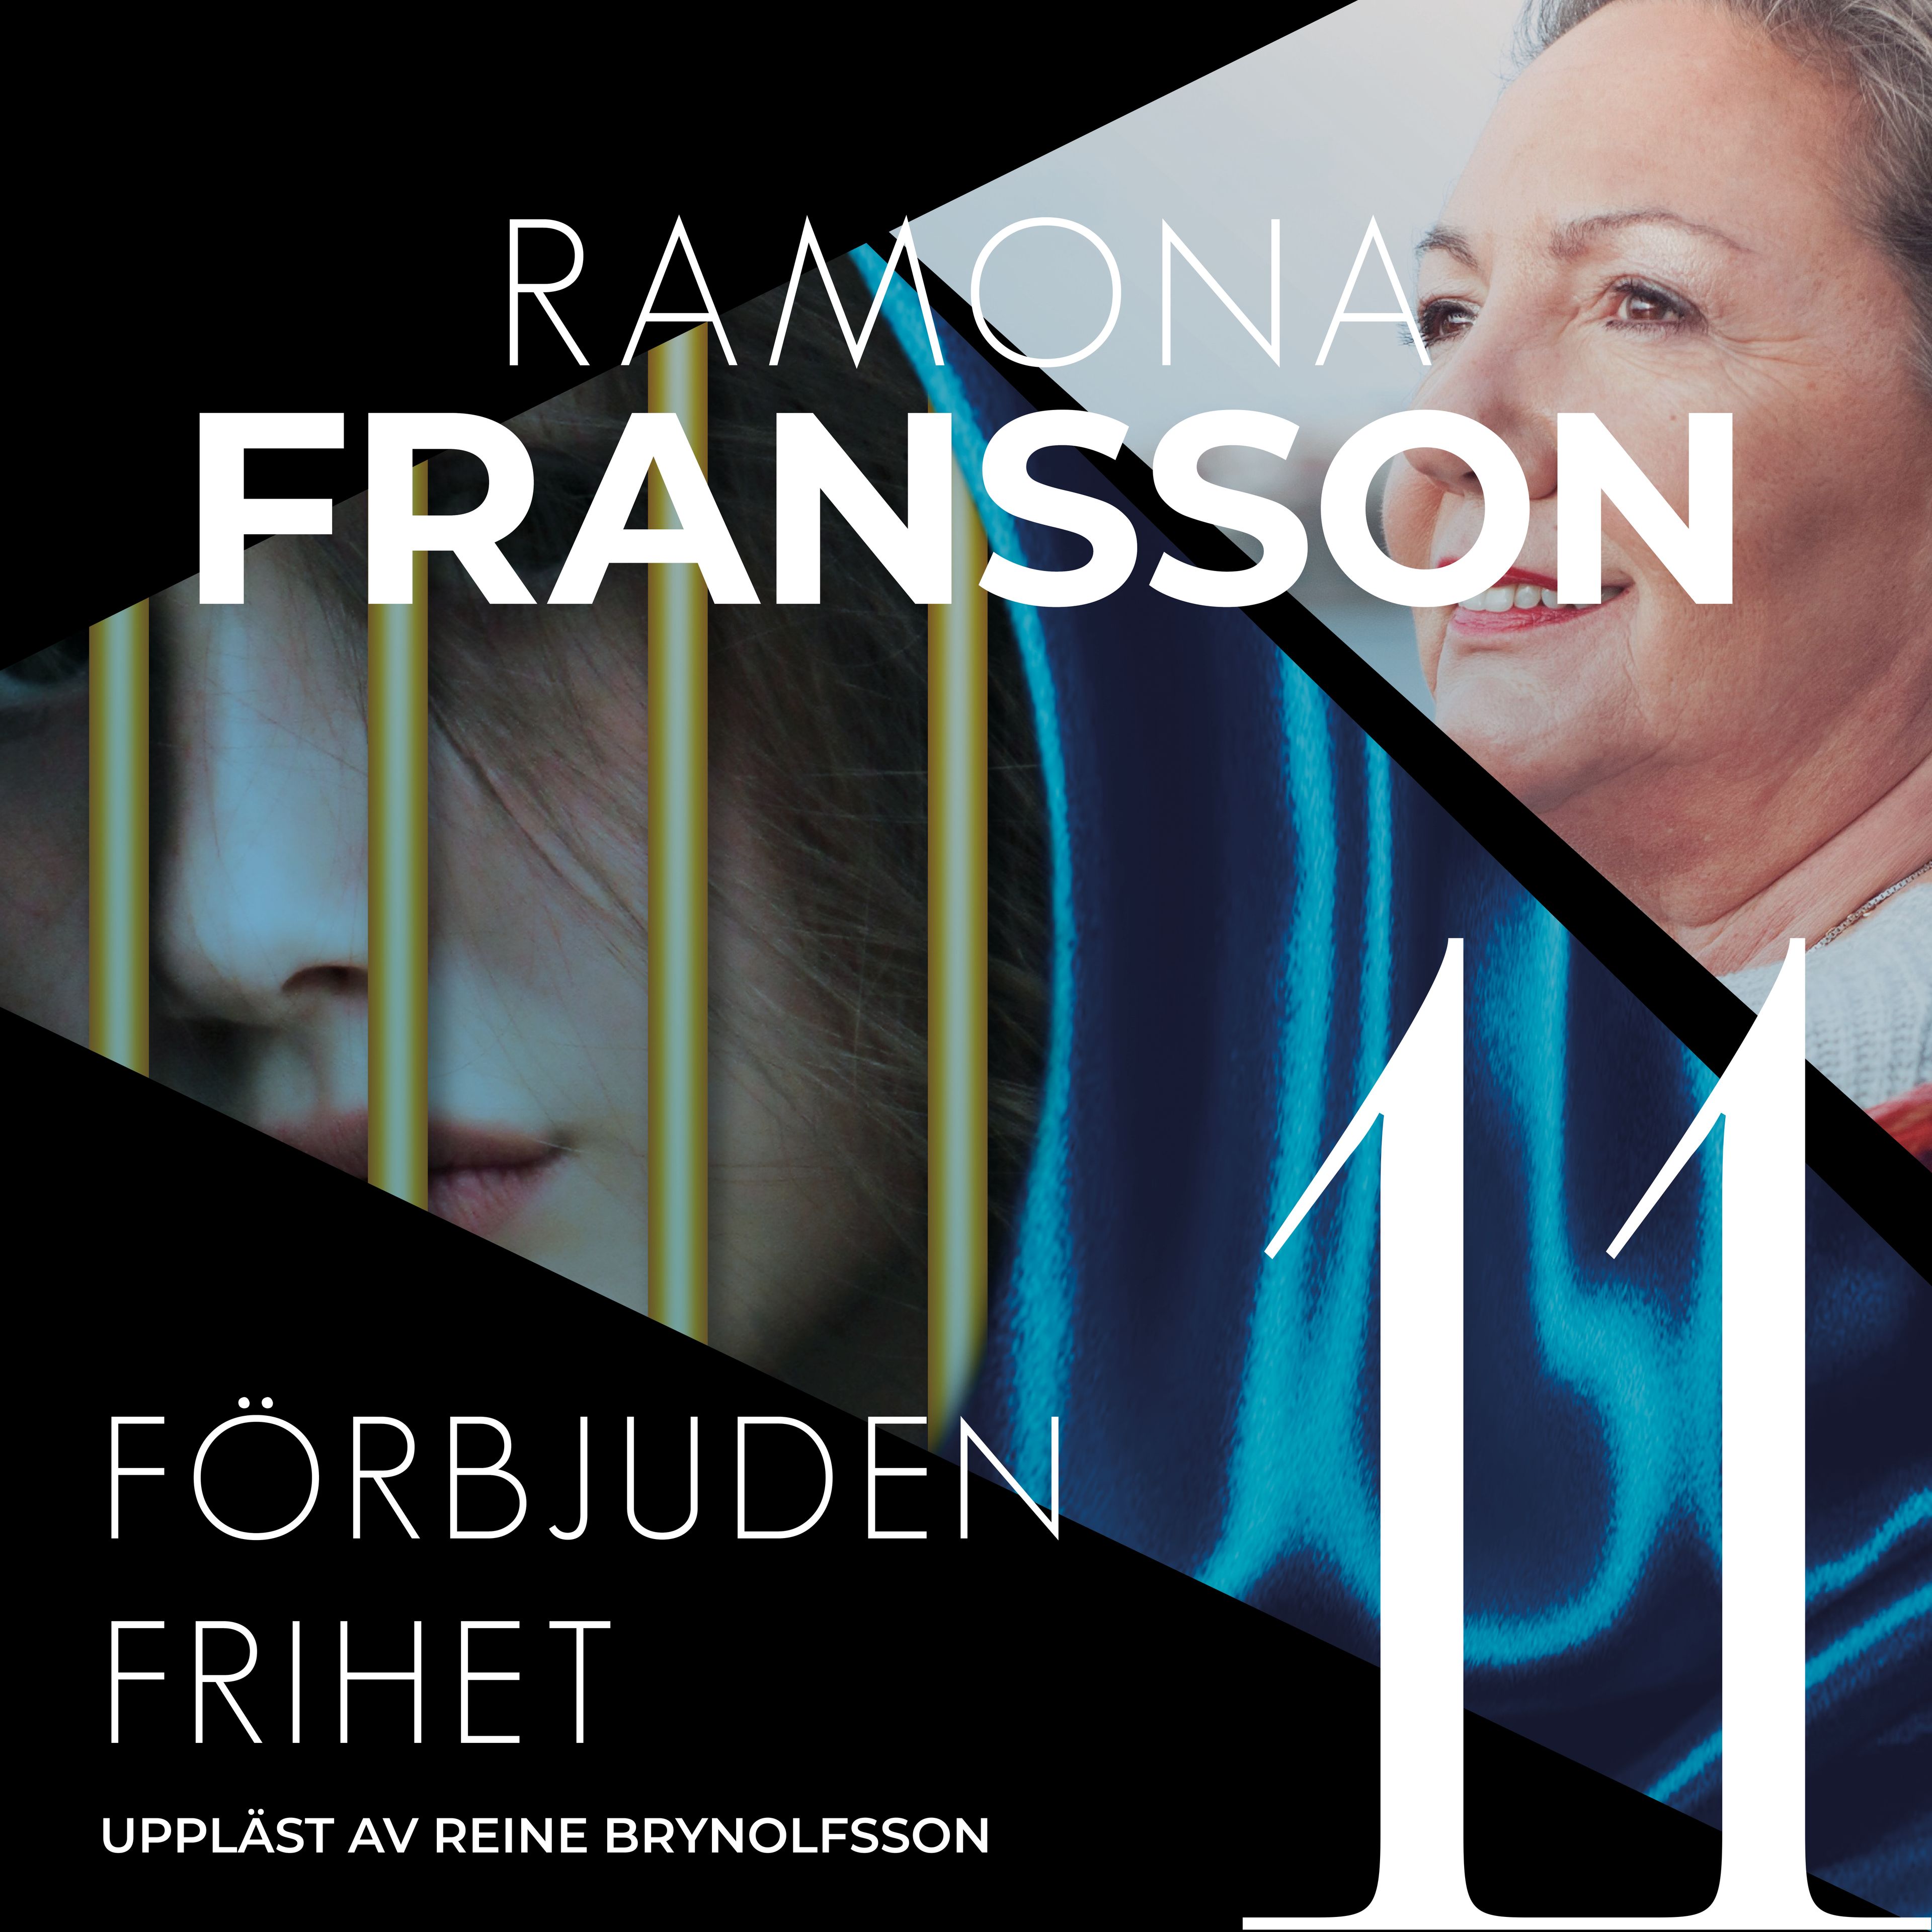 Förbjuden frihet, ljudbok av Ramona Fransson